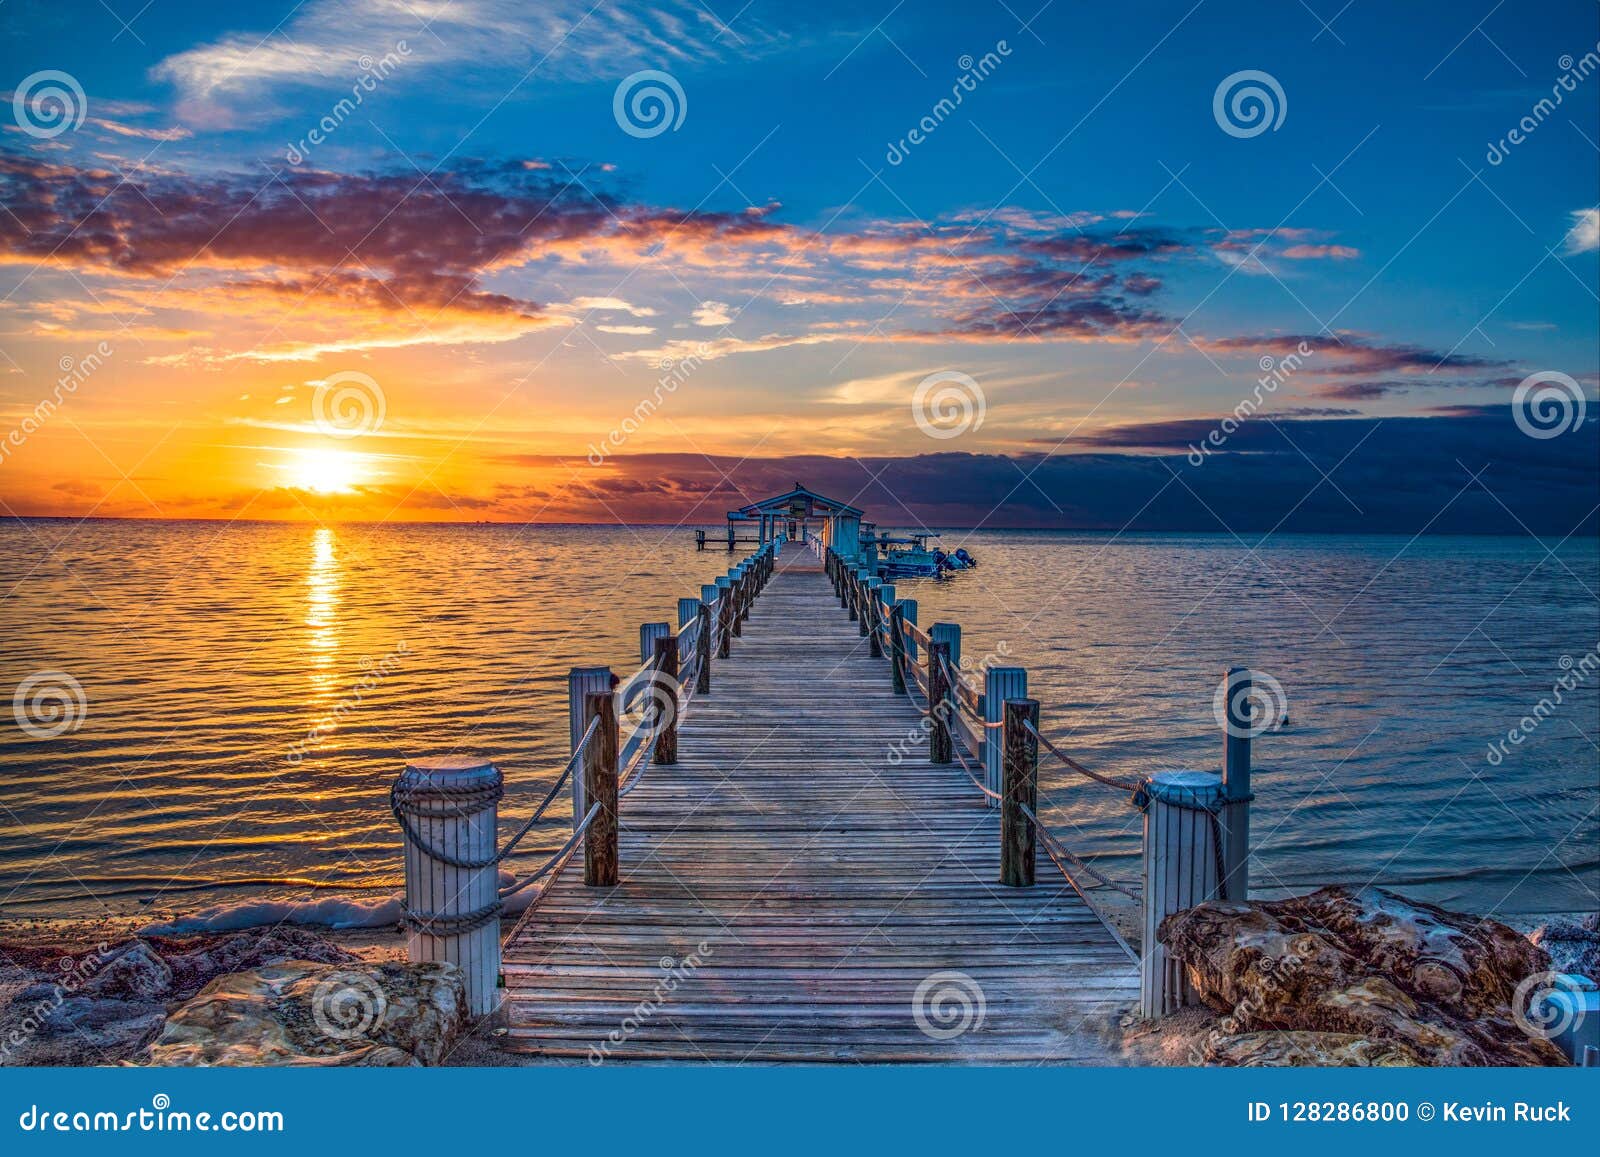 islamorada florida keys dock pier sunrise